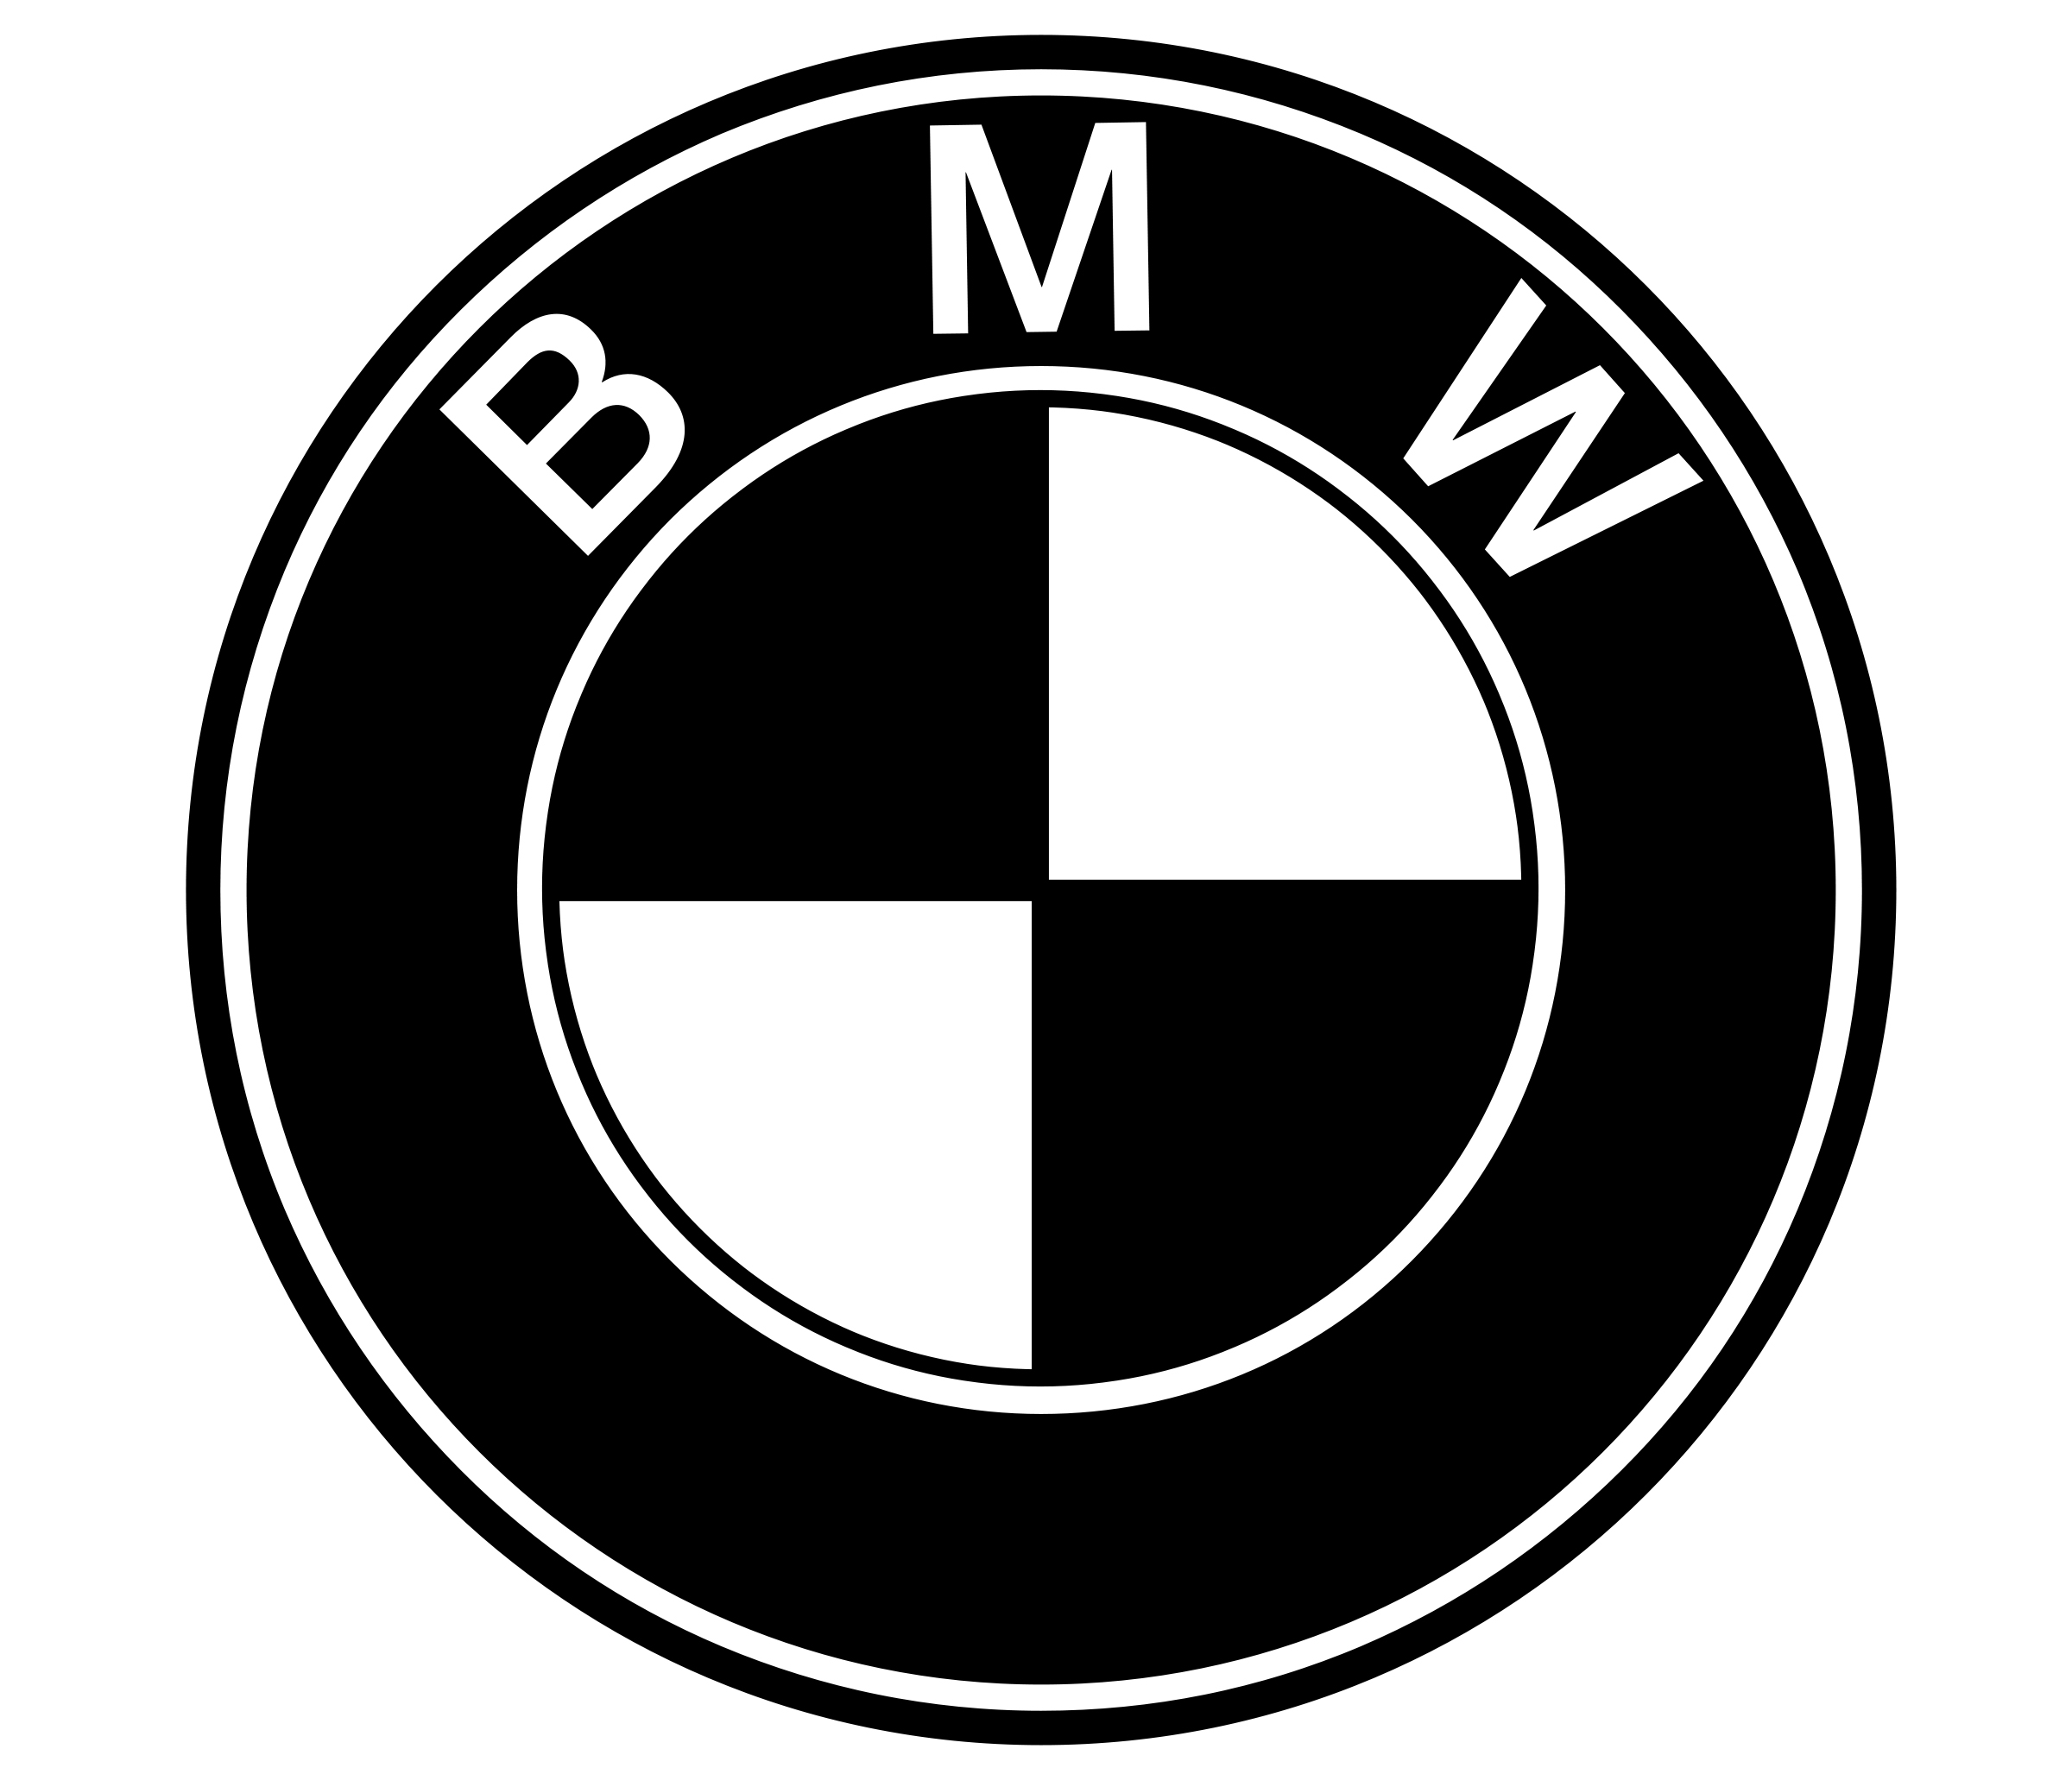 Emblème bmw noir